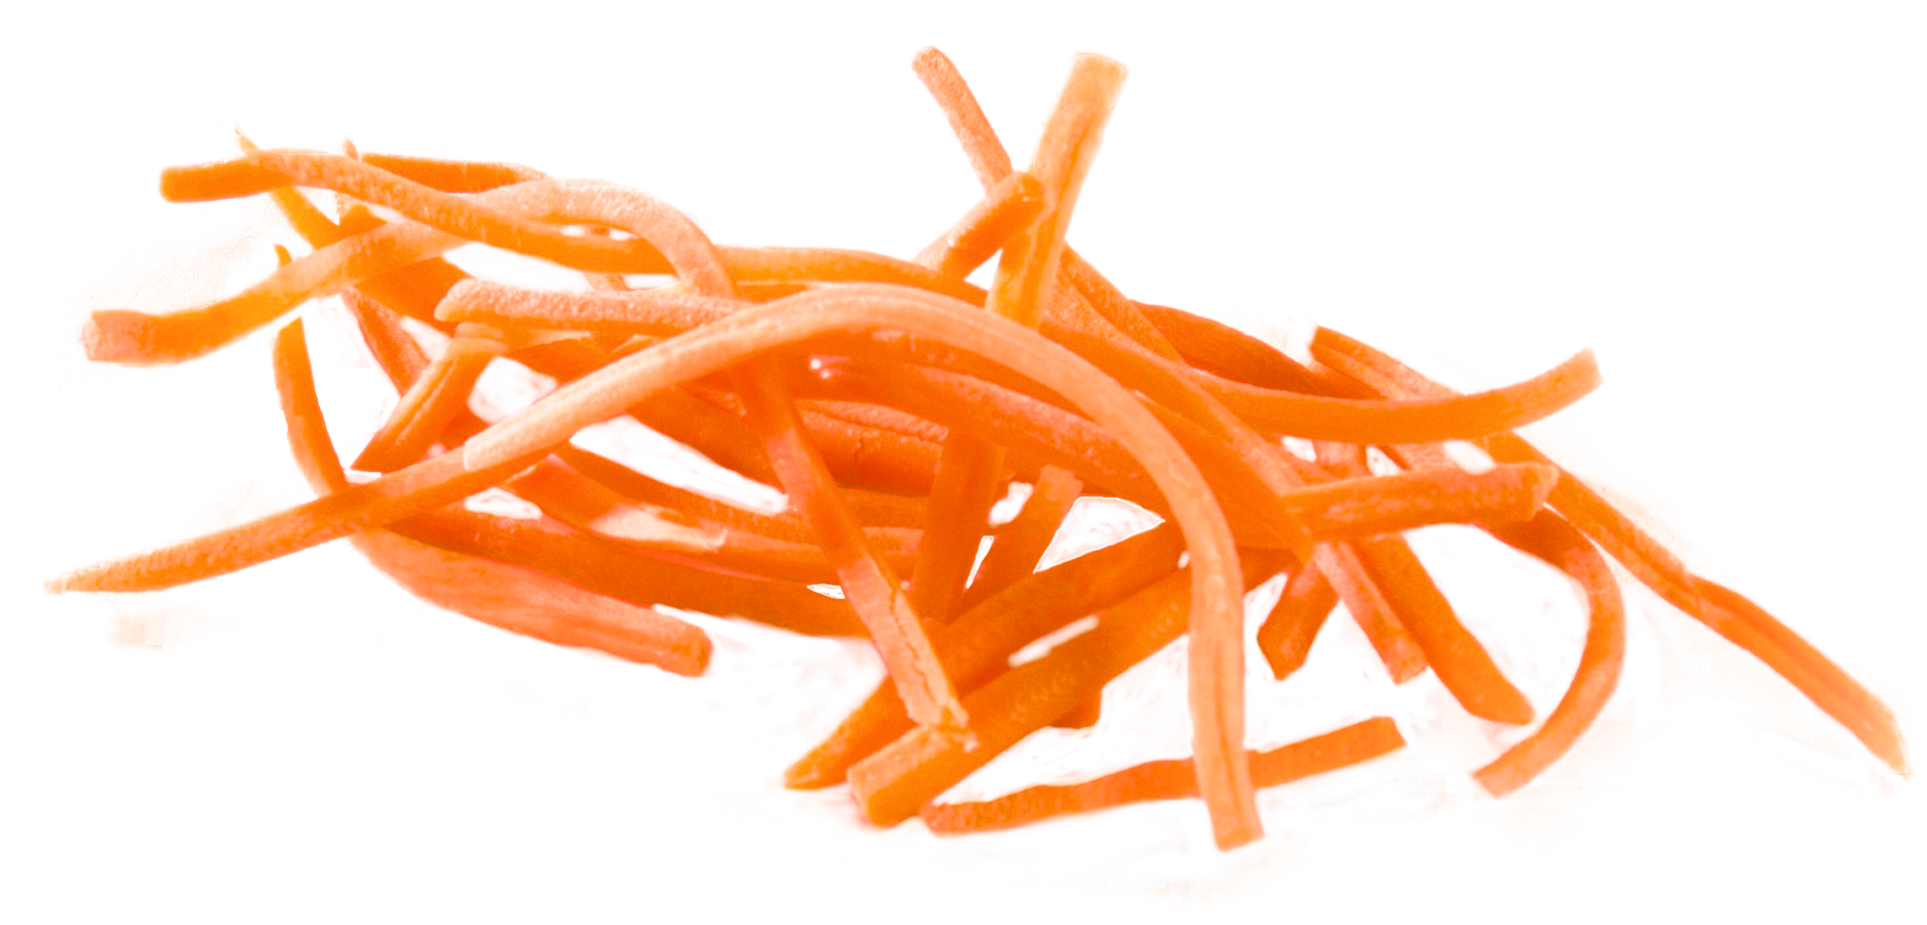 Sliced Carrot